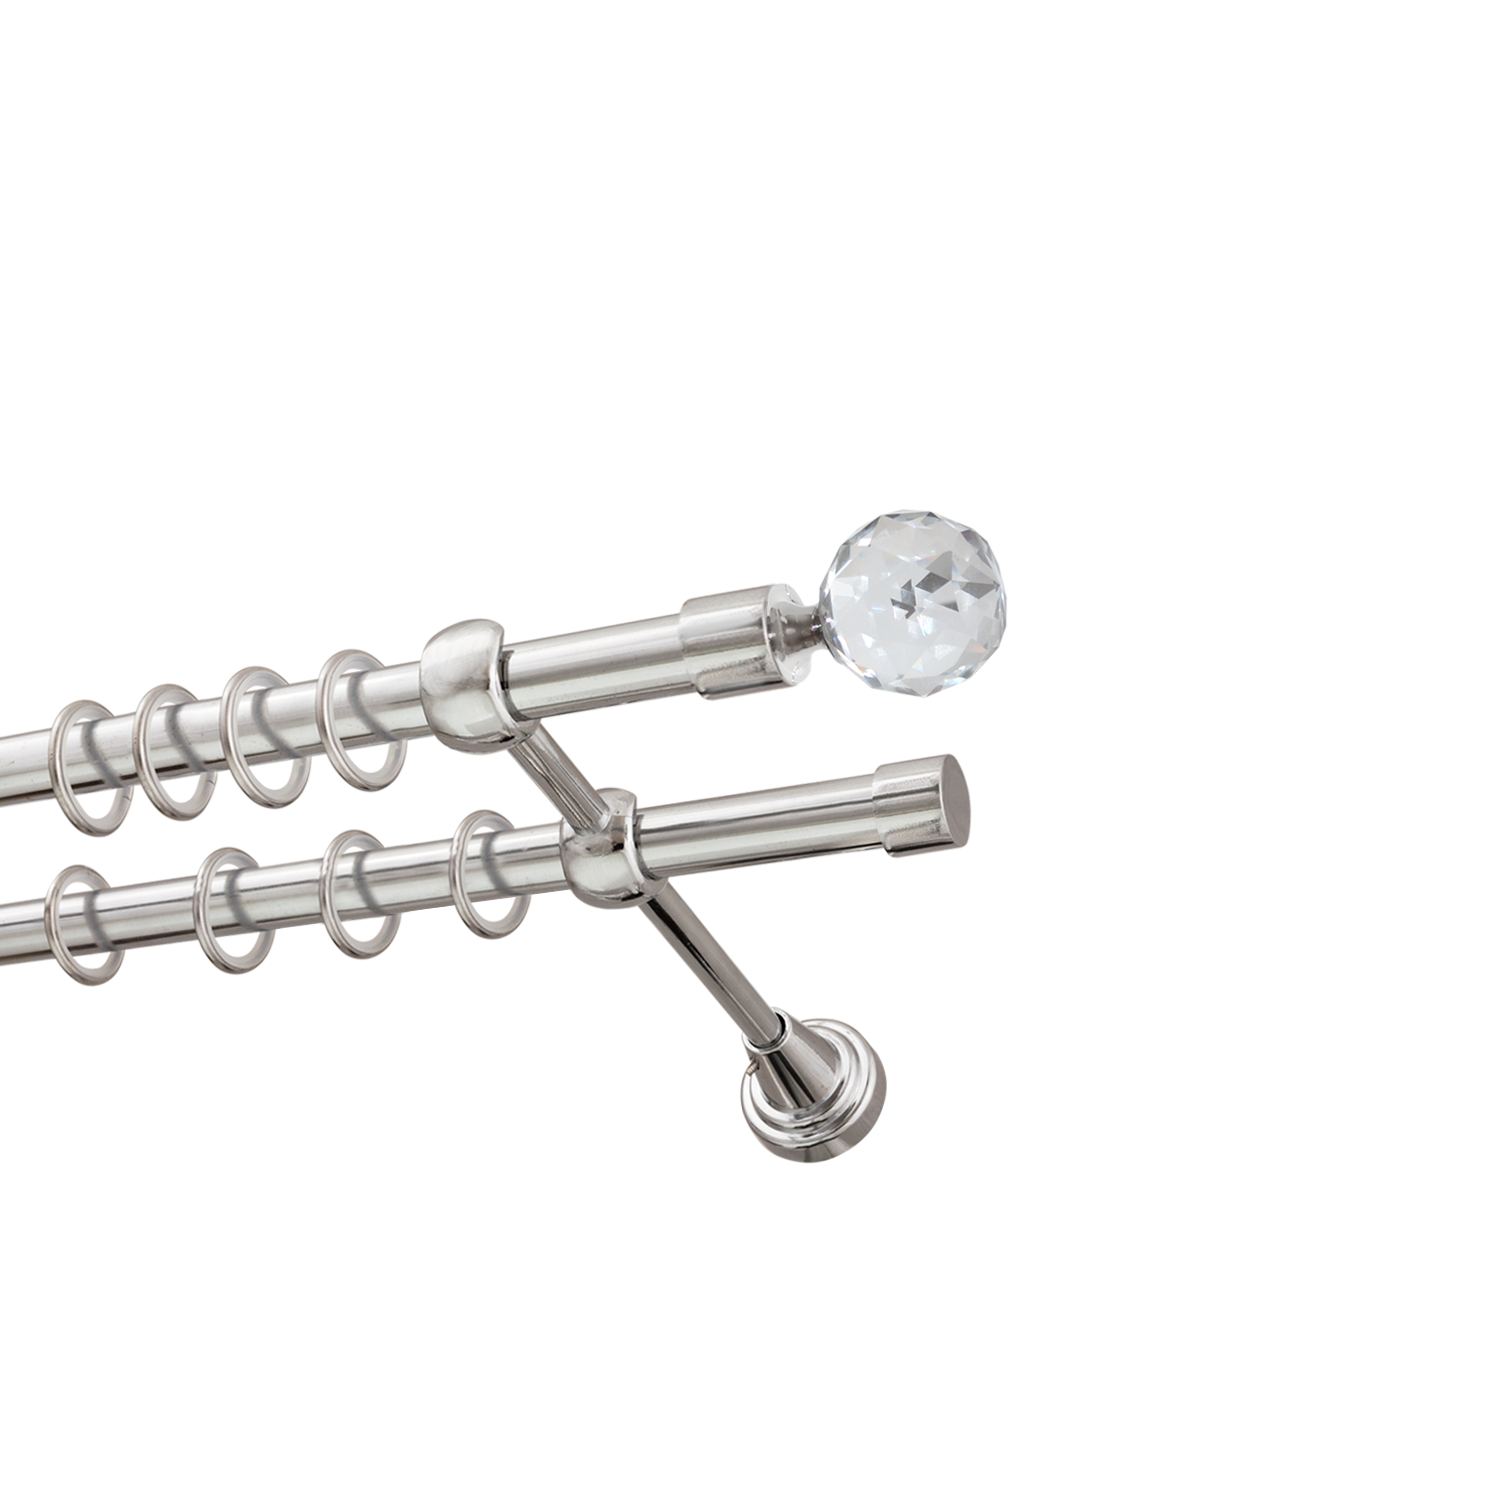 Металлический карниз для штор Карат, двухрядный 16/16 мм, серебро, гладкая штанга, длина 240 см - фото Wikidecor.ru